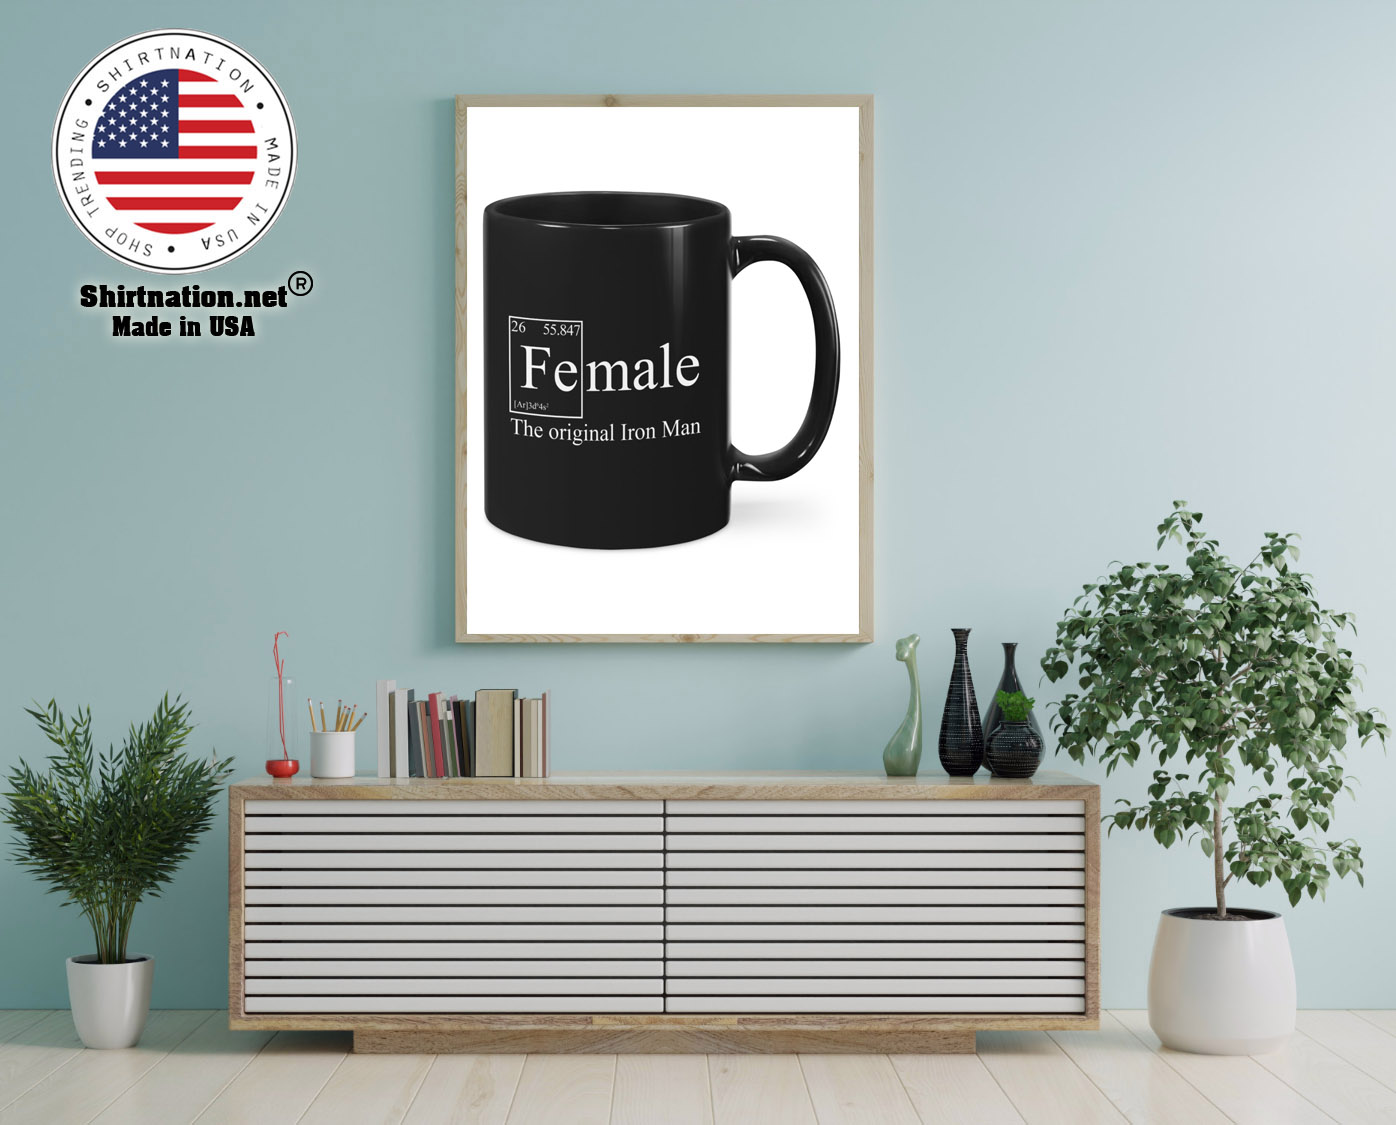 Female the original iron man mug 12